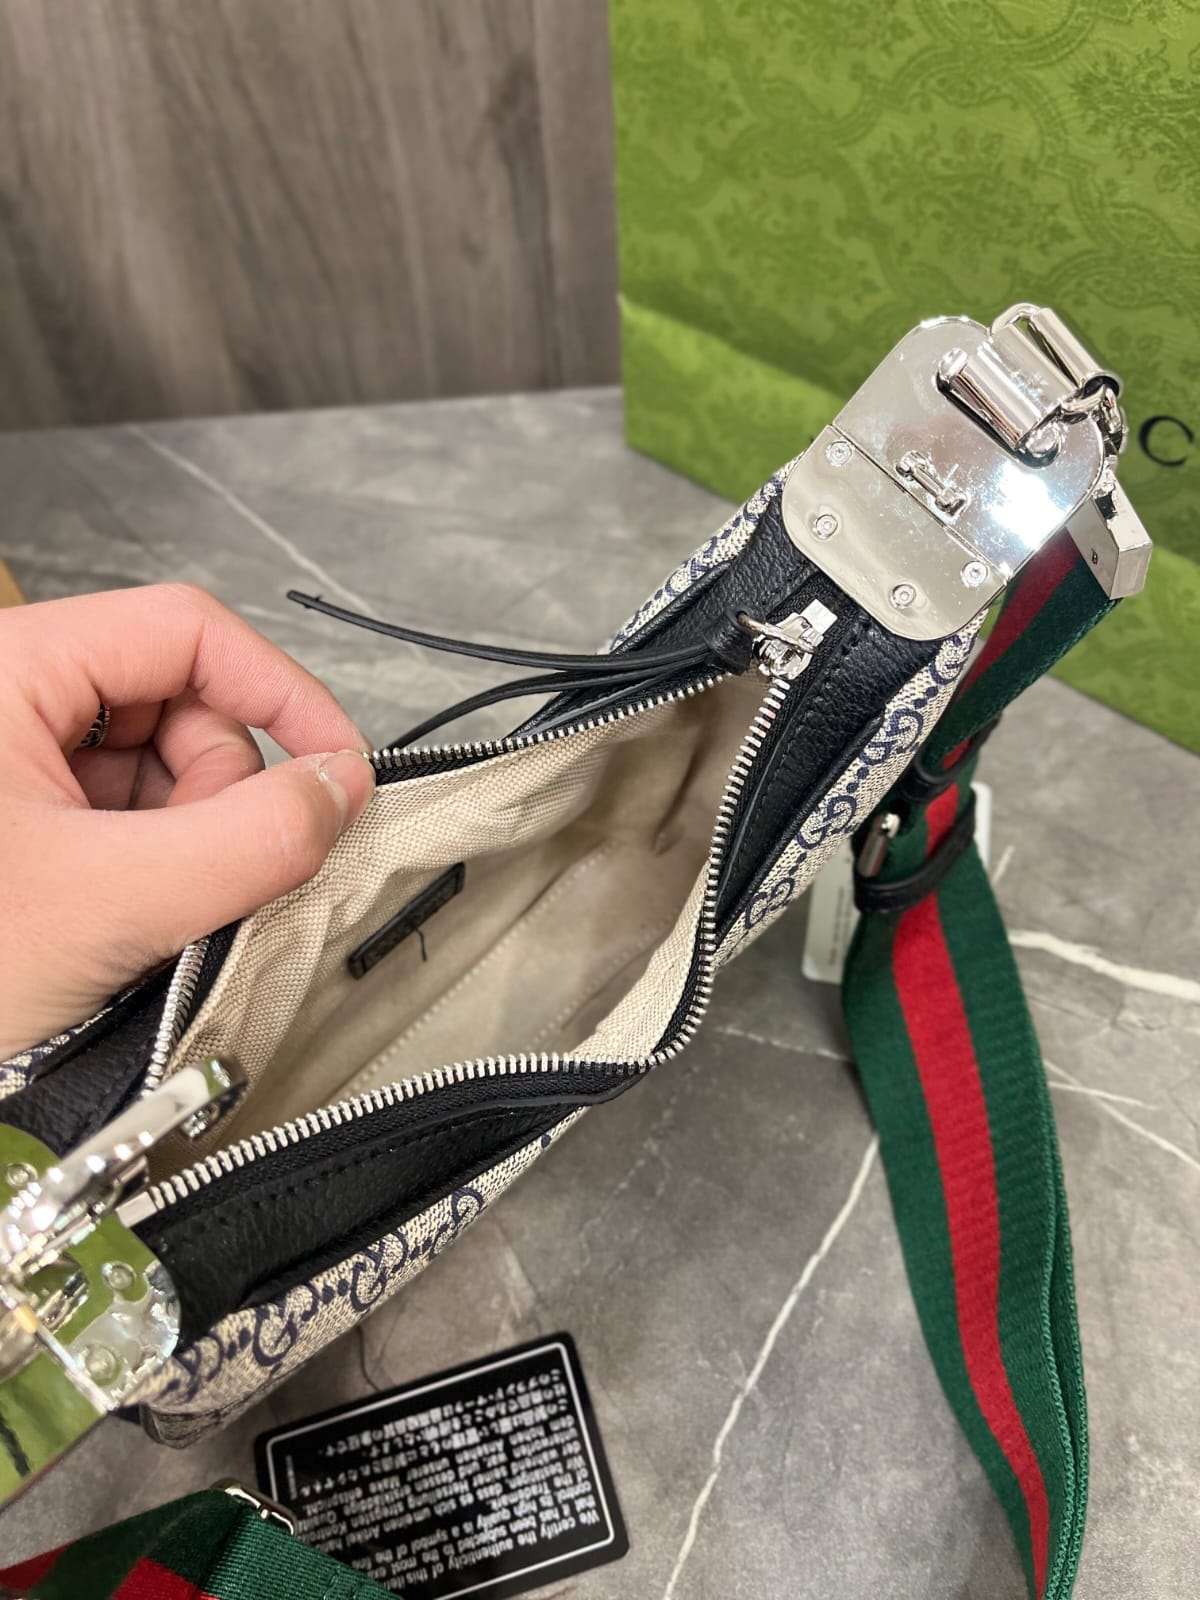 Gucci Attache Small s Shoulder Bag Handbag